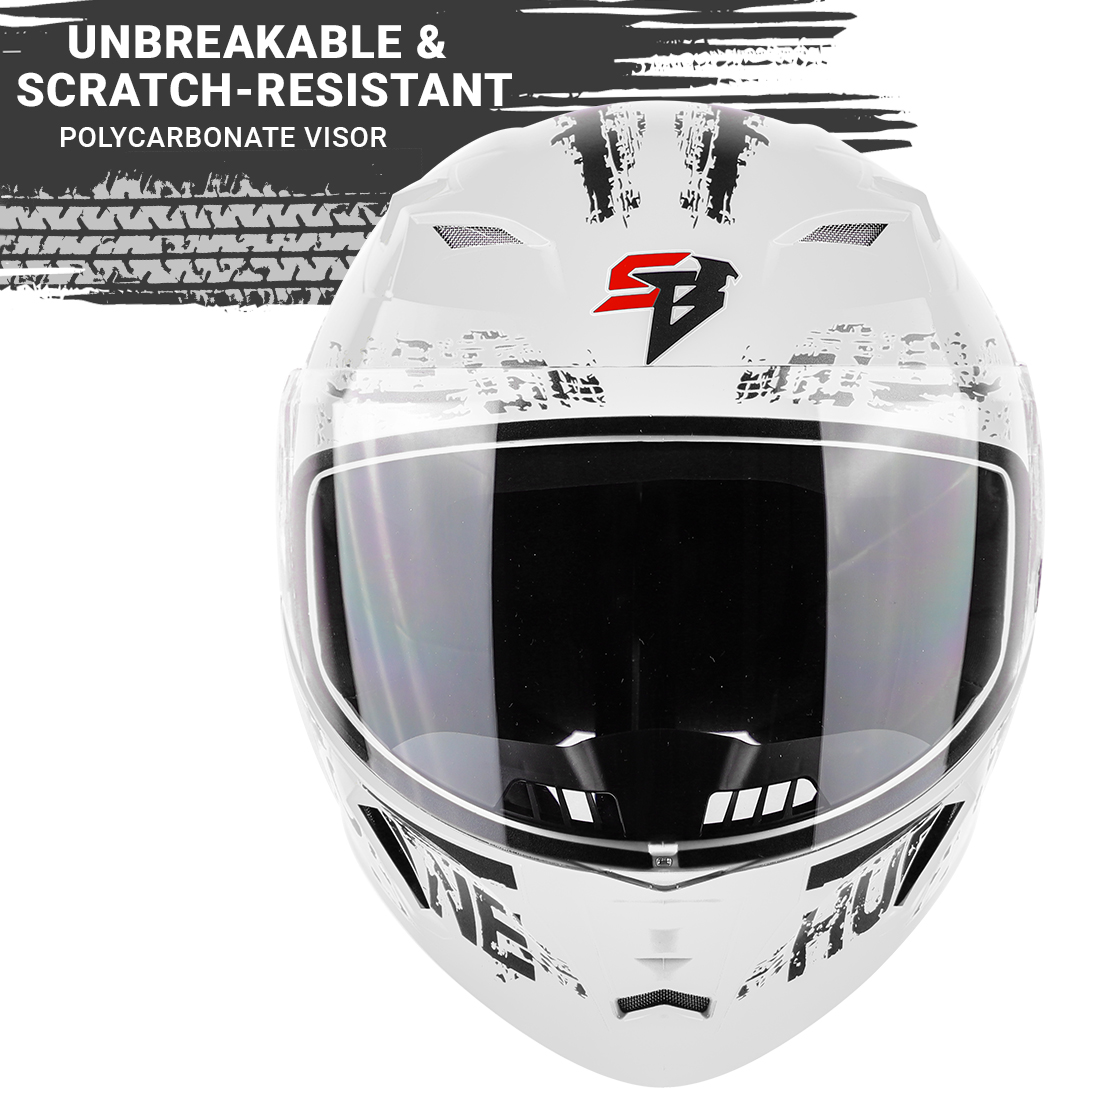 Steelbird SBA-21 Hurricane ISI Certified Full Face Graphic Helmet (Glossy White Grey)